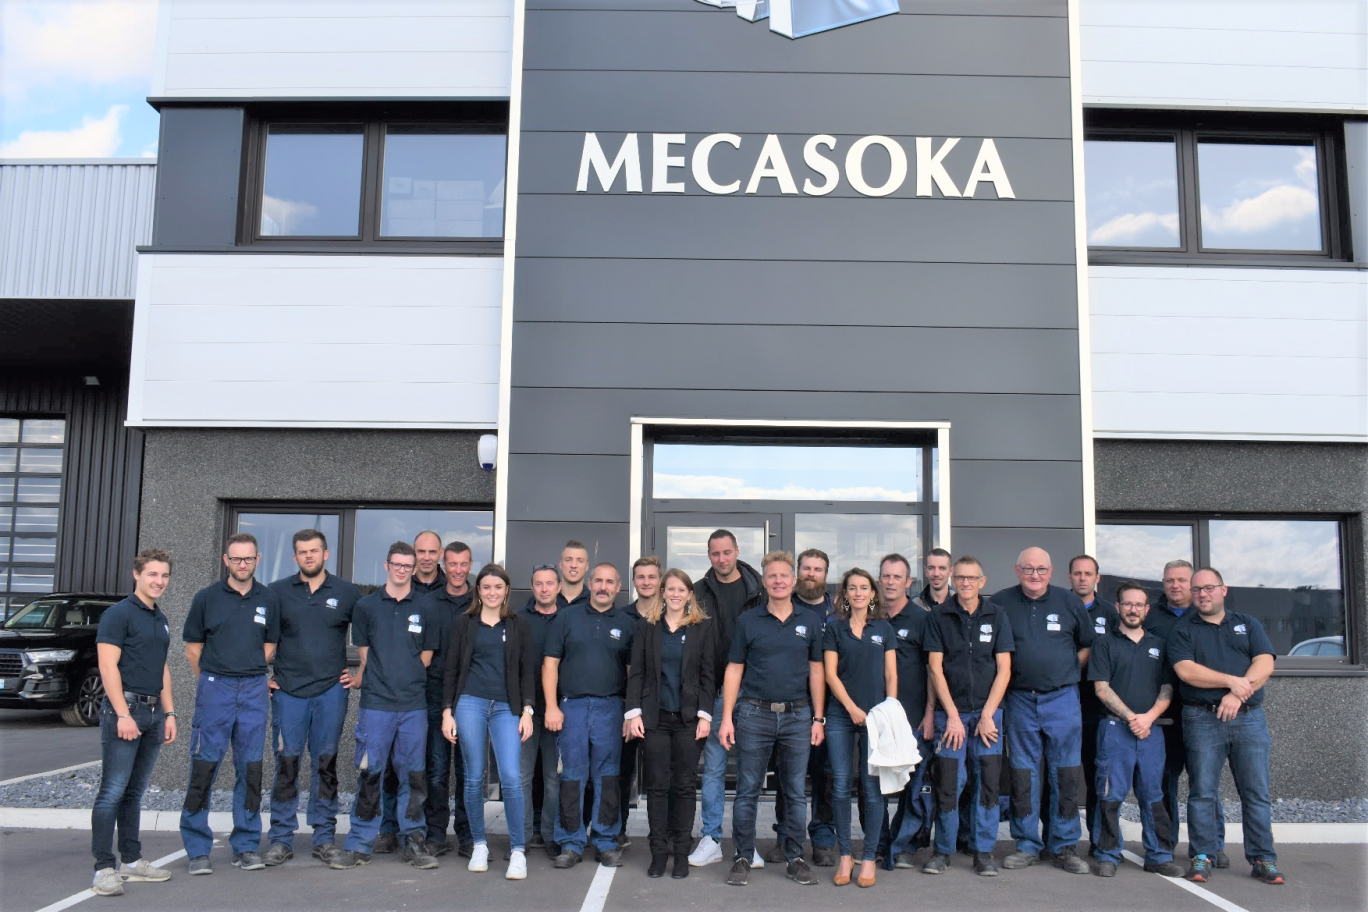 L'équipe Mecasoka pose devant ses nouveaux bâtiments.